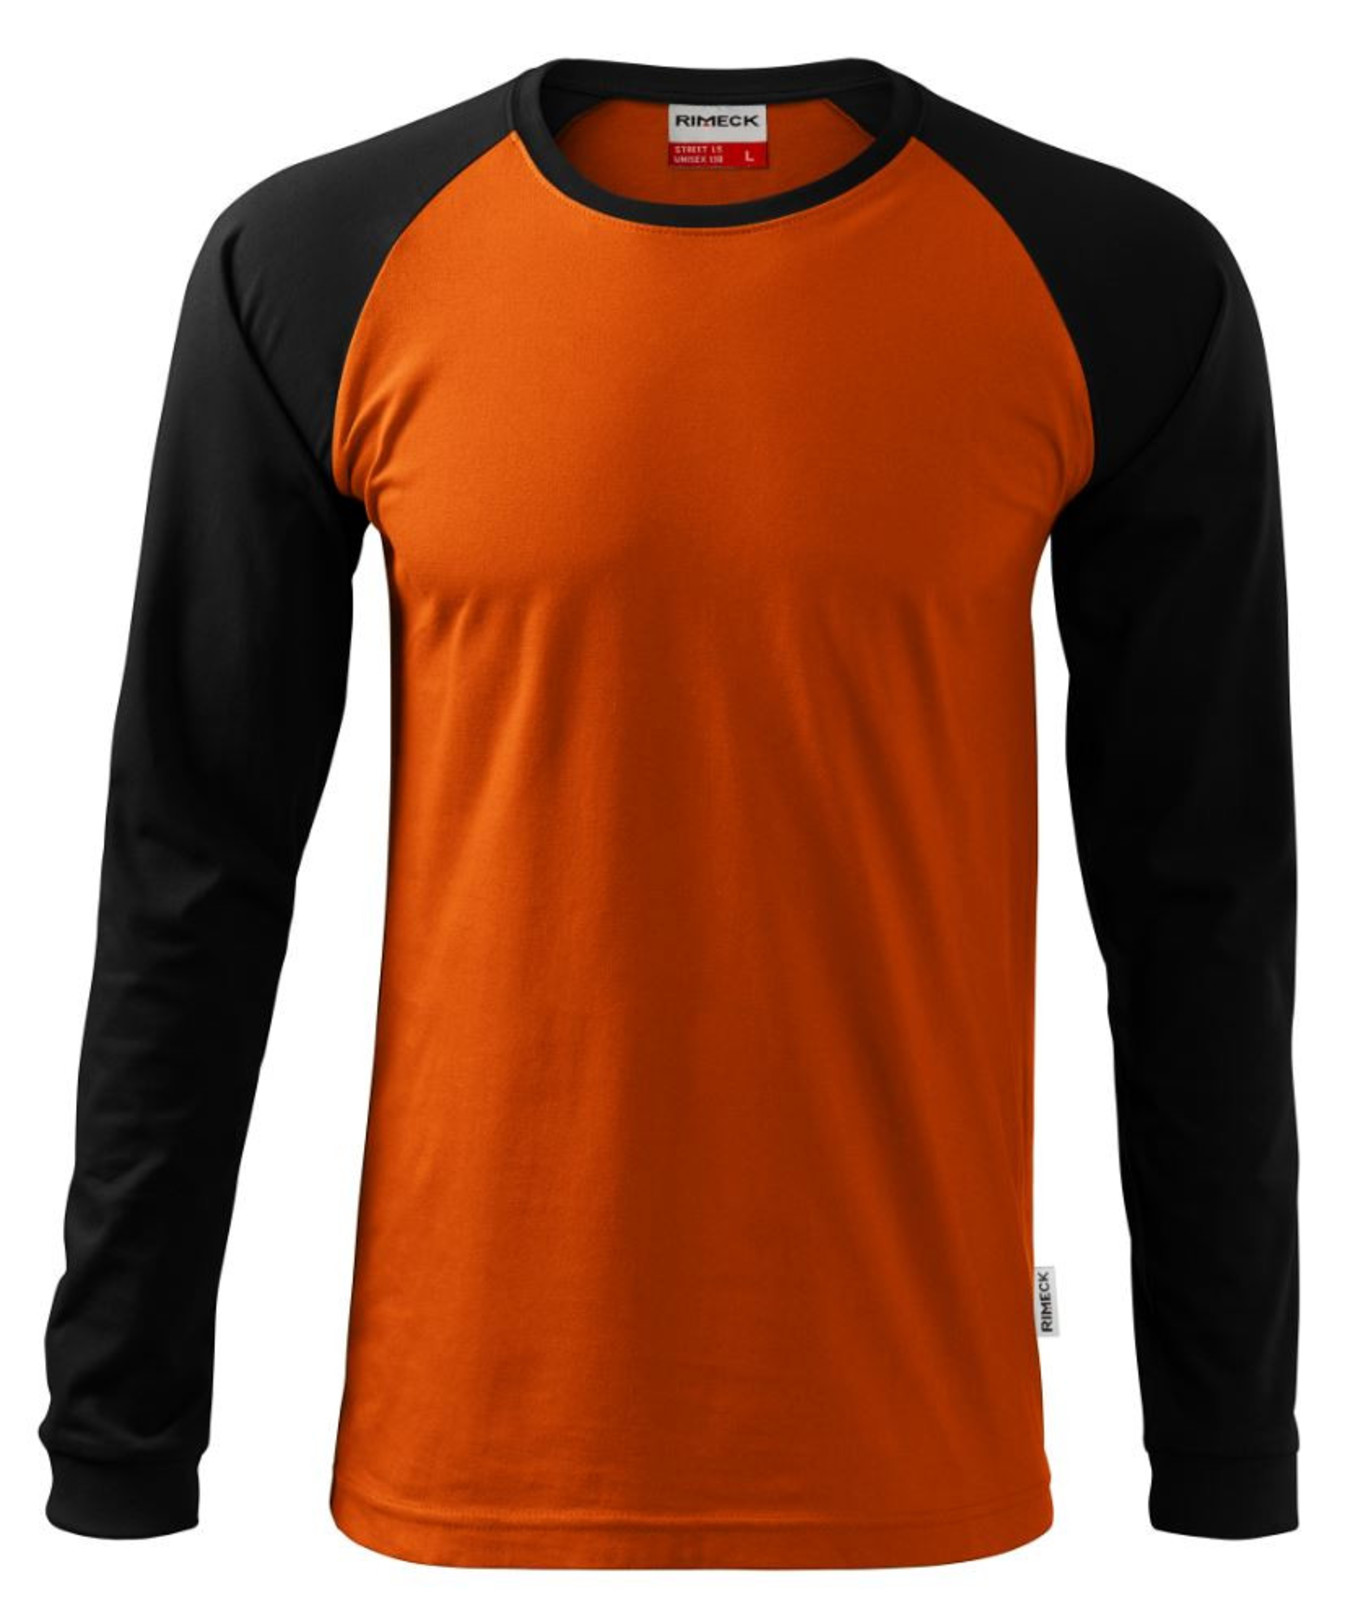 Unisex tričko s dlhým rukávom Rimeck Street LS 130 - veľkosť: S, farba: tmavomodrá/svetlomodrá